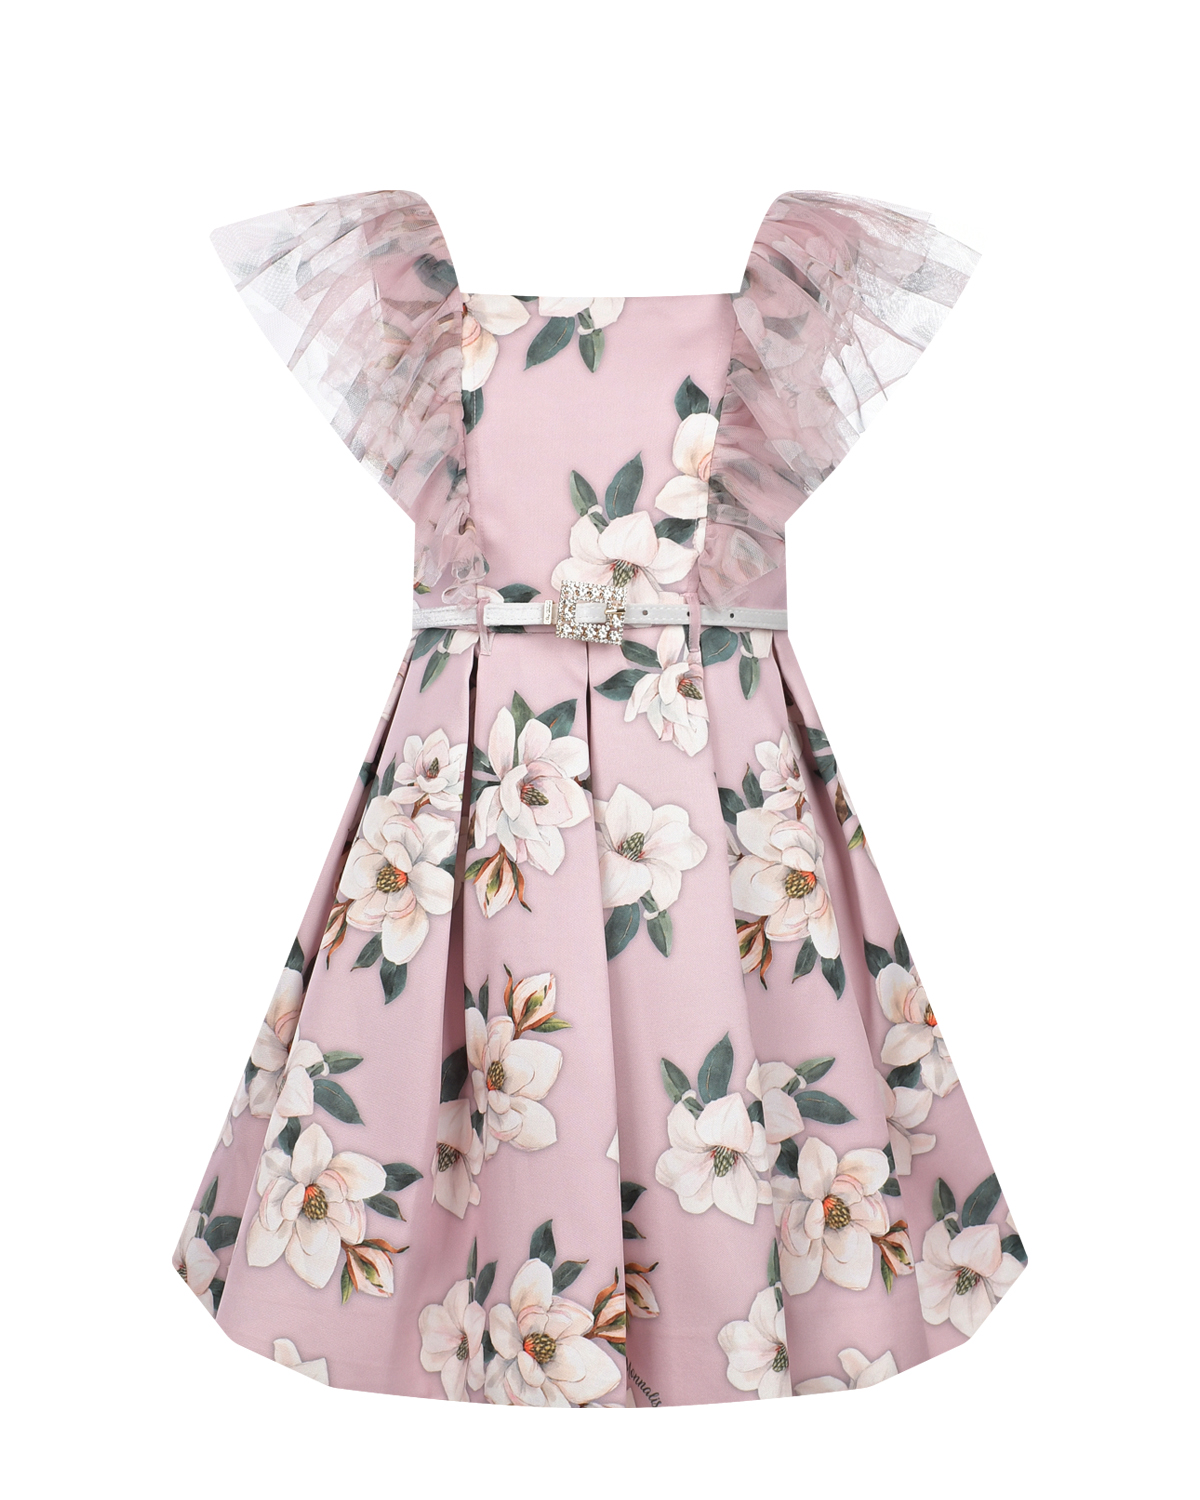 Розовое платье с цветочным принтом Monnalisa платье для собак кулирка xs дс 24 ош 32 36 ог 34 38 розовое с серыми полосками